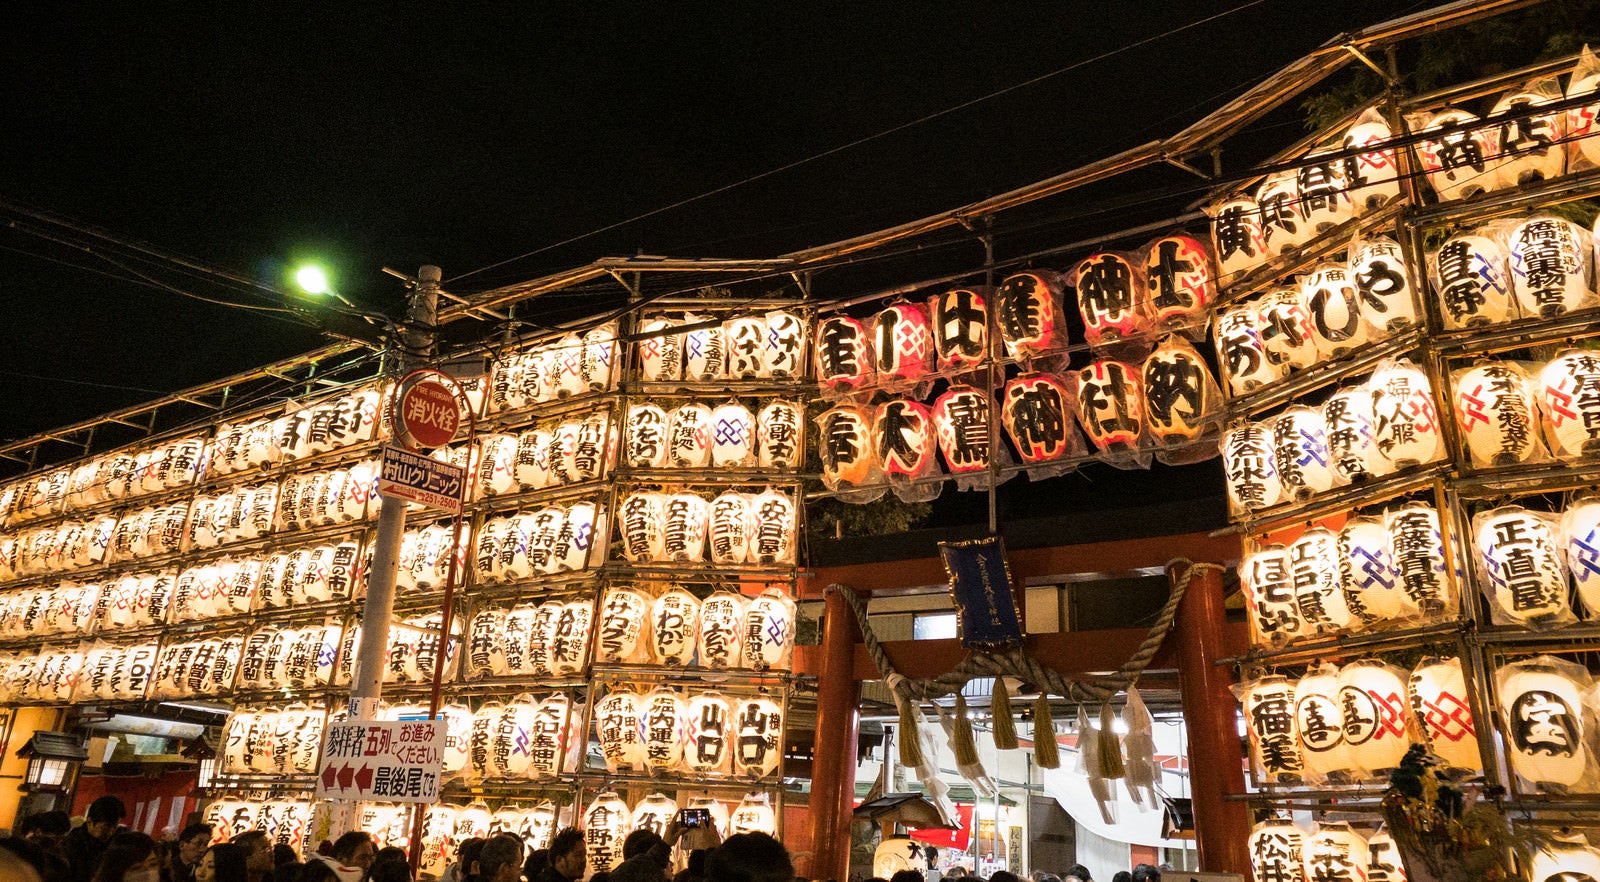 「金刀比羅大鷲神社の酉の市の提灯」の写真